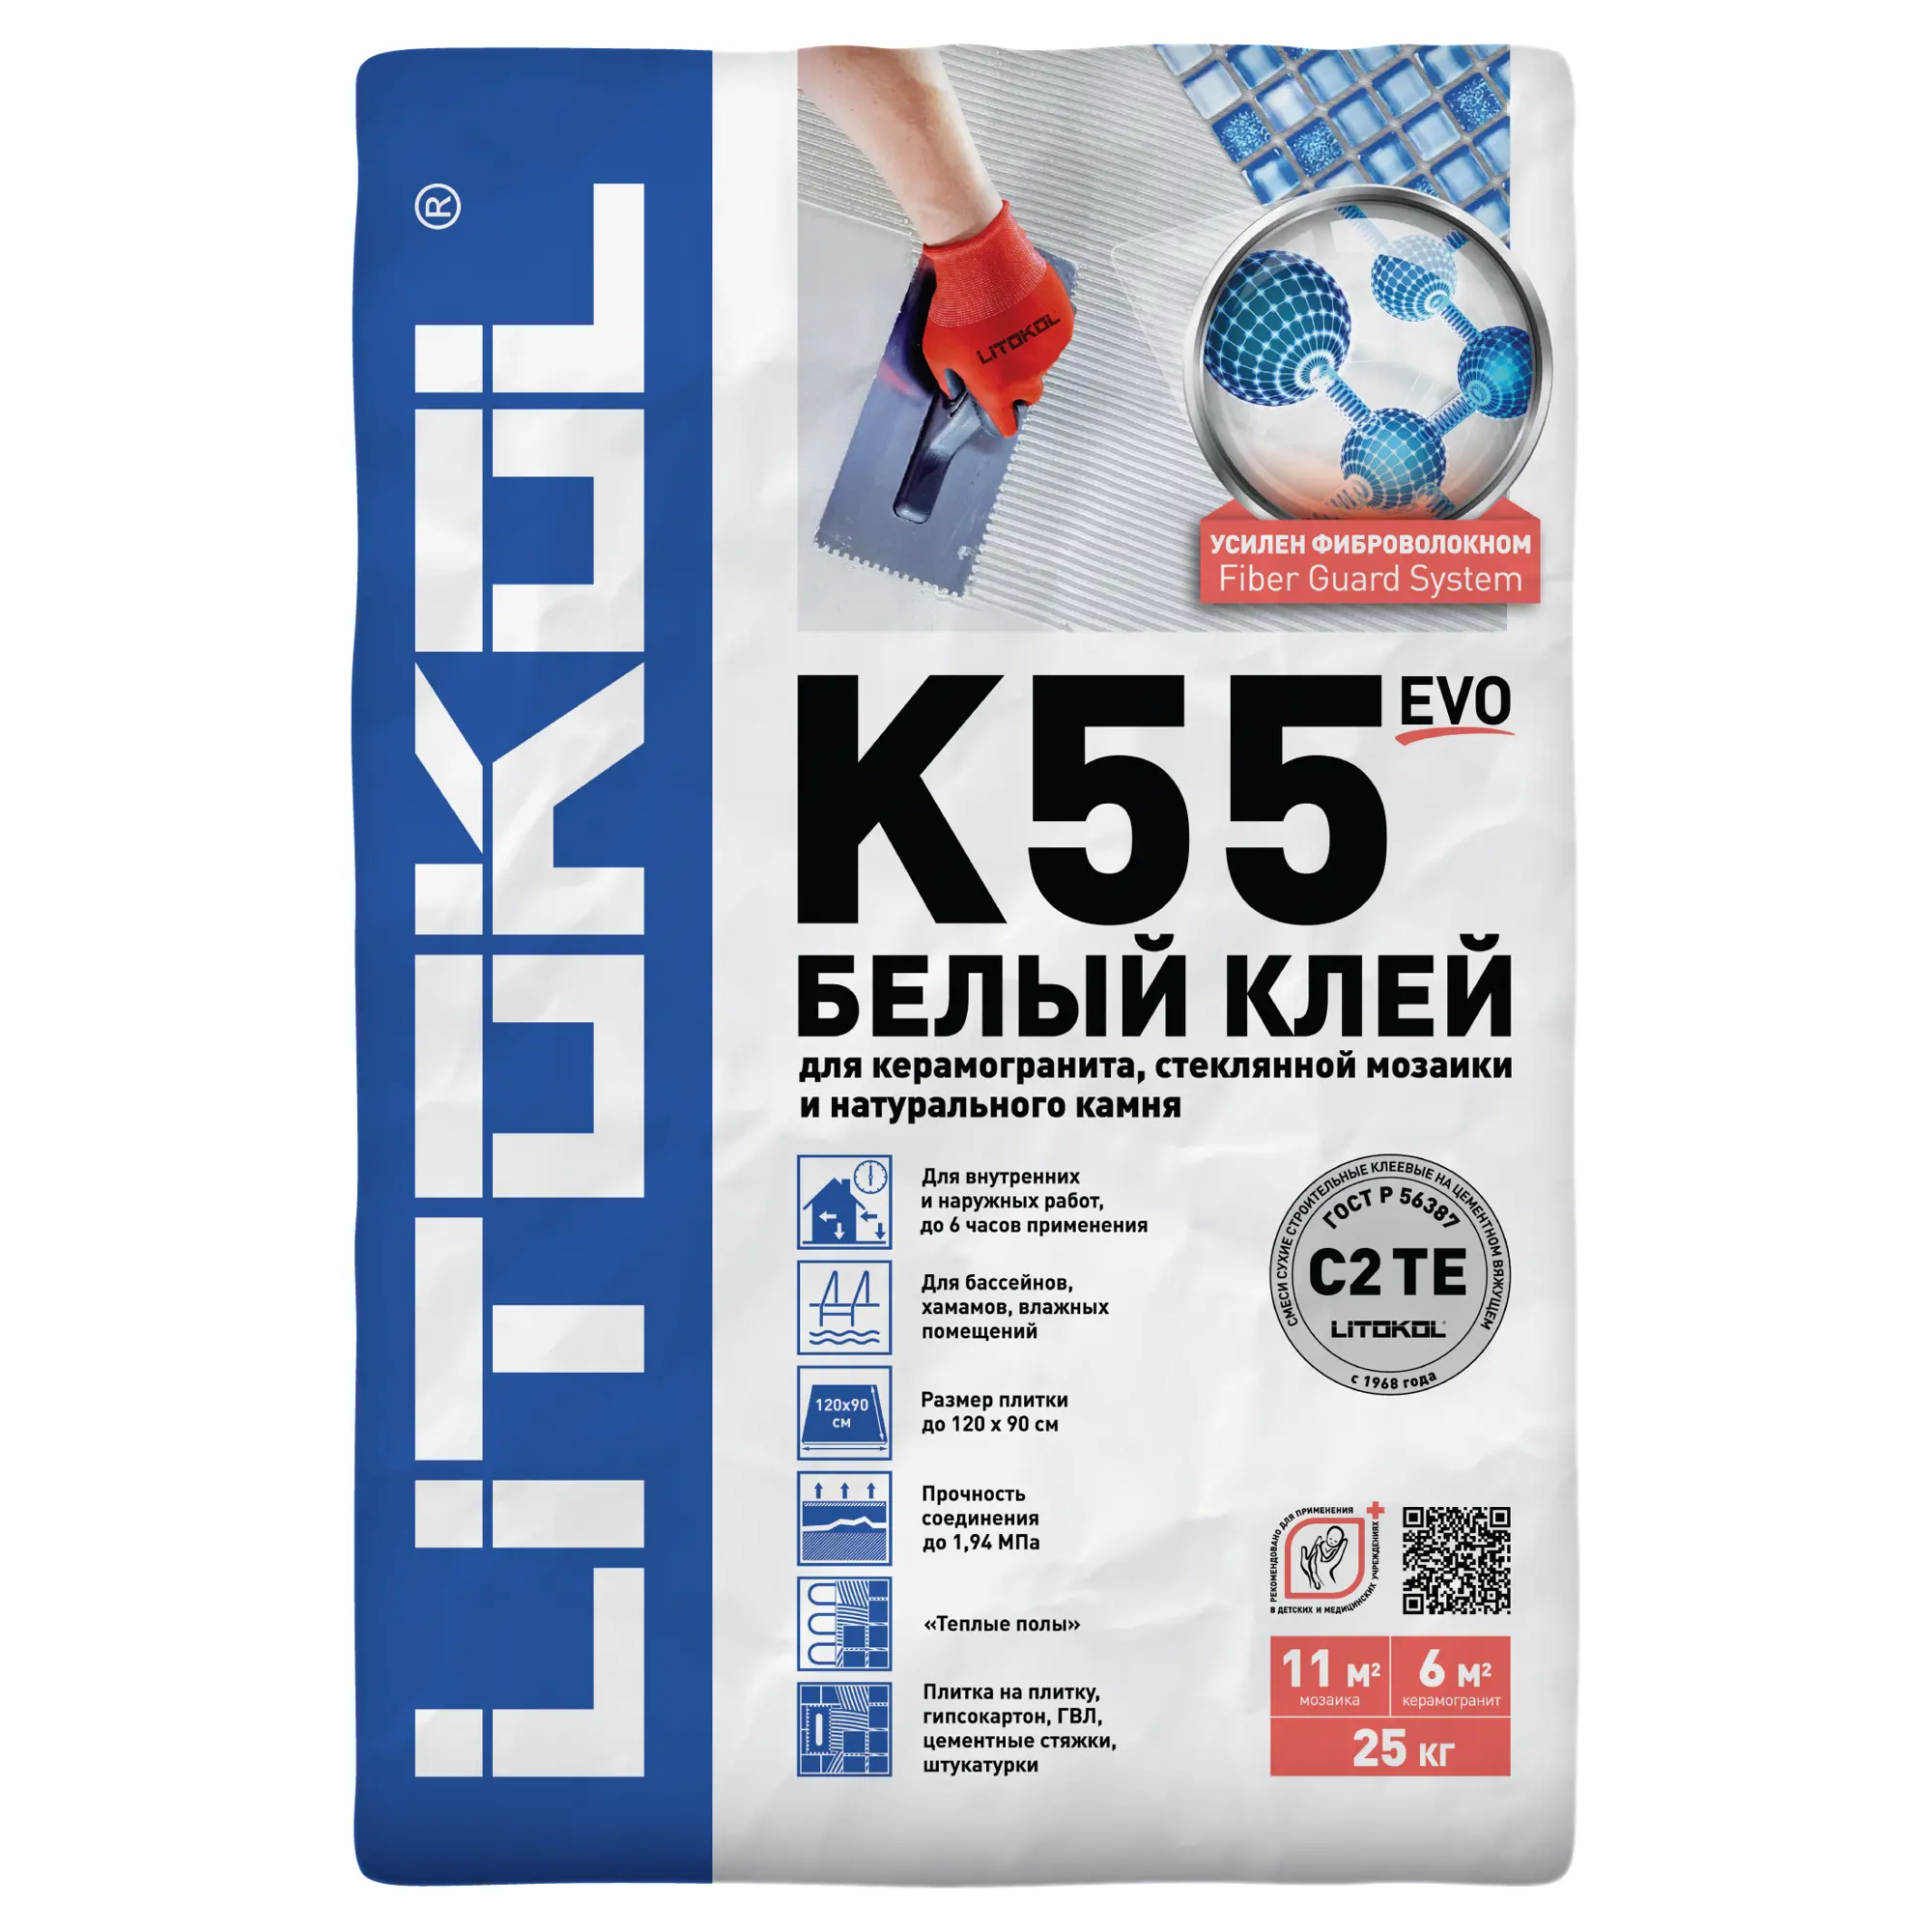 Особенности применения клея Litokol K55